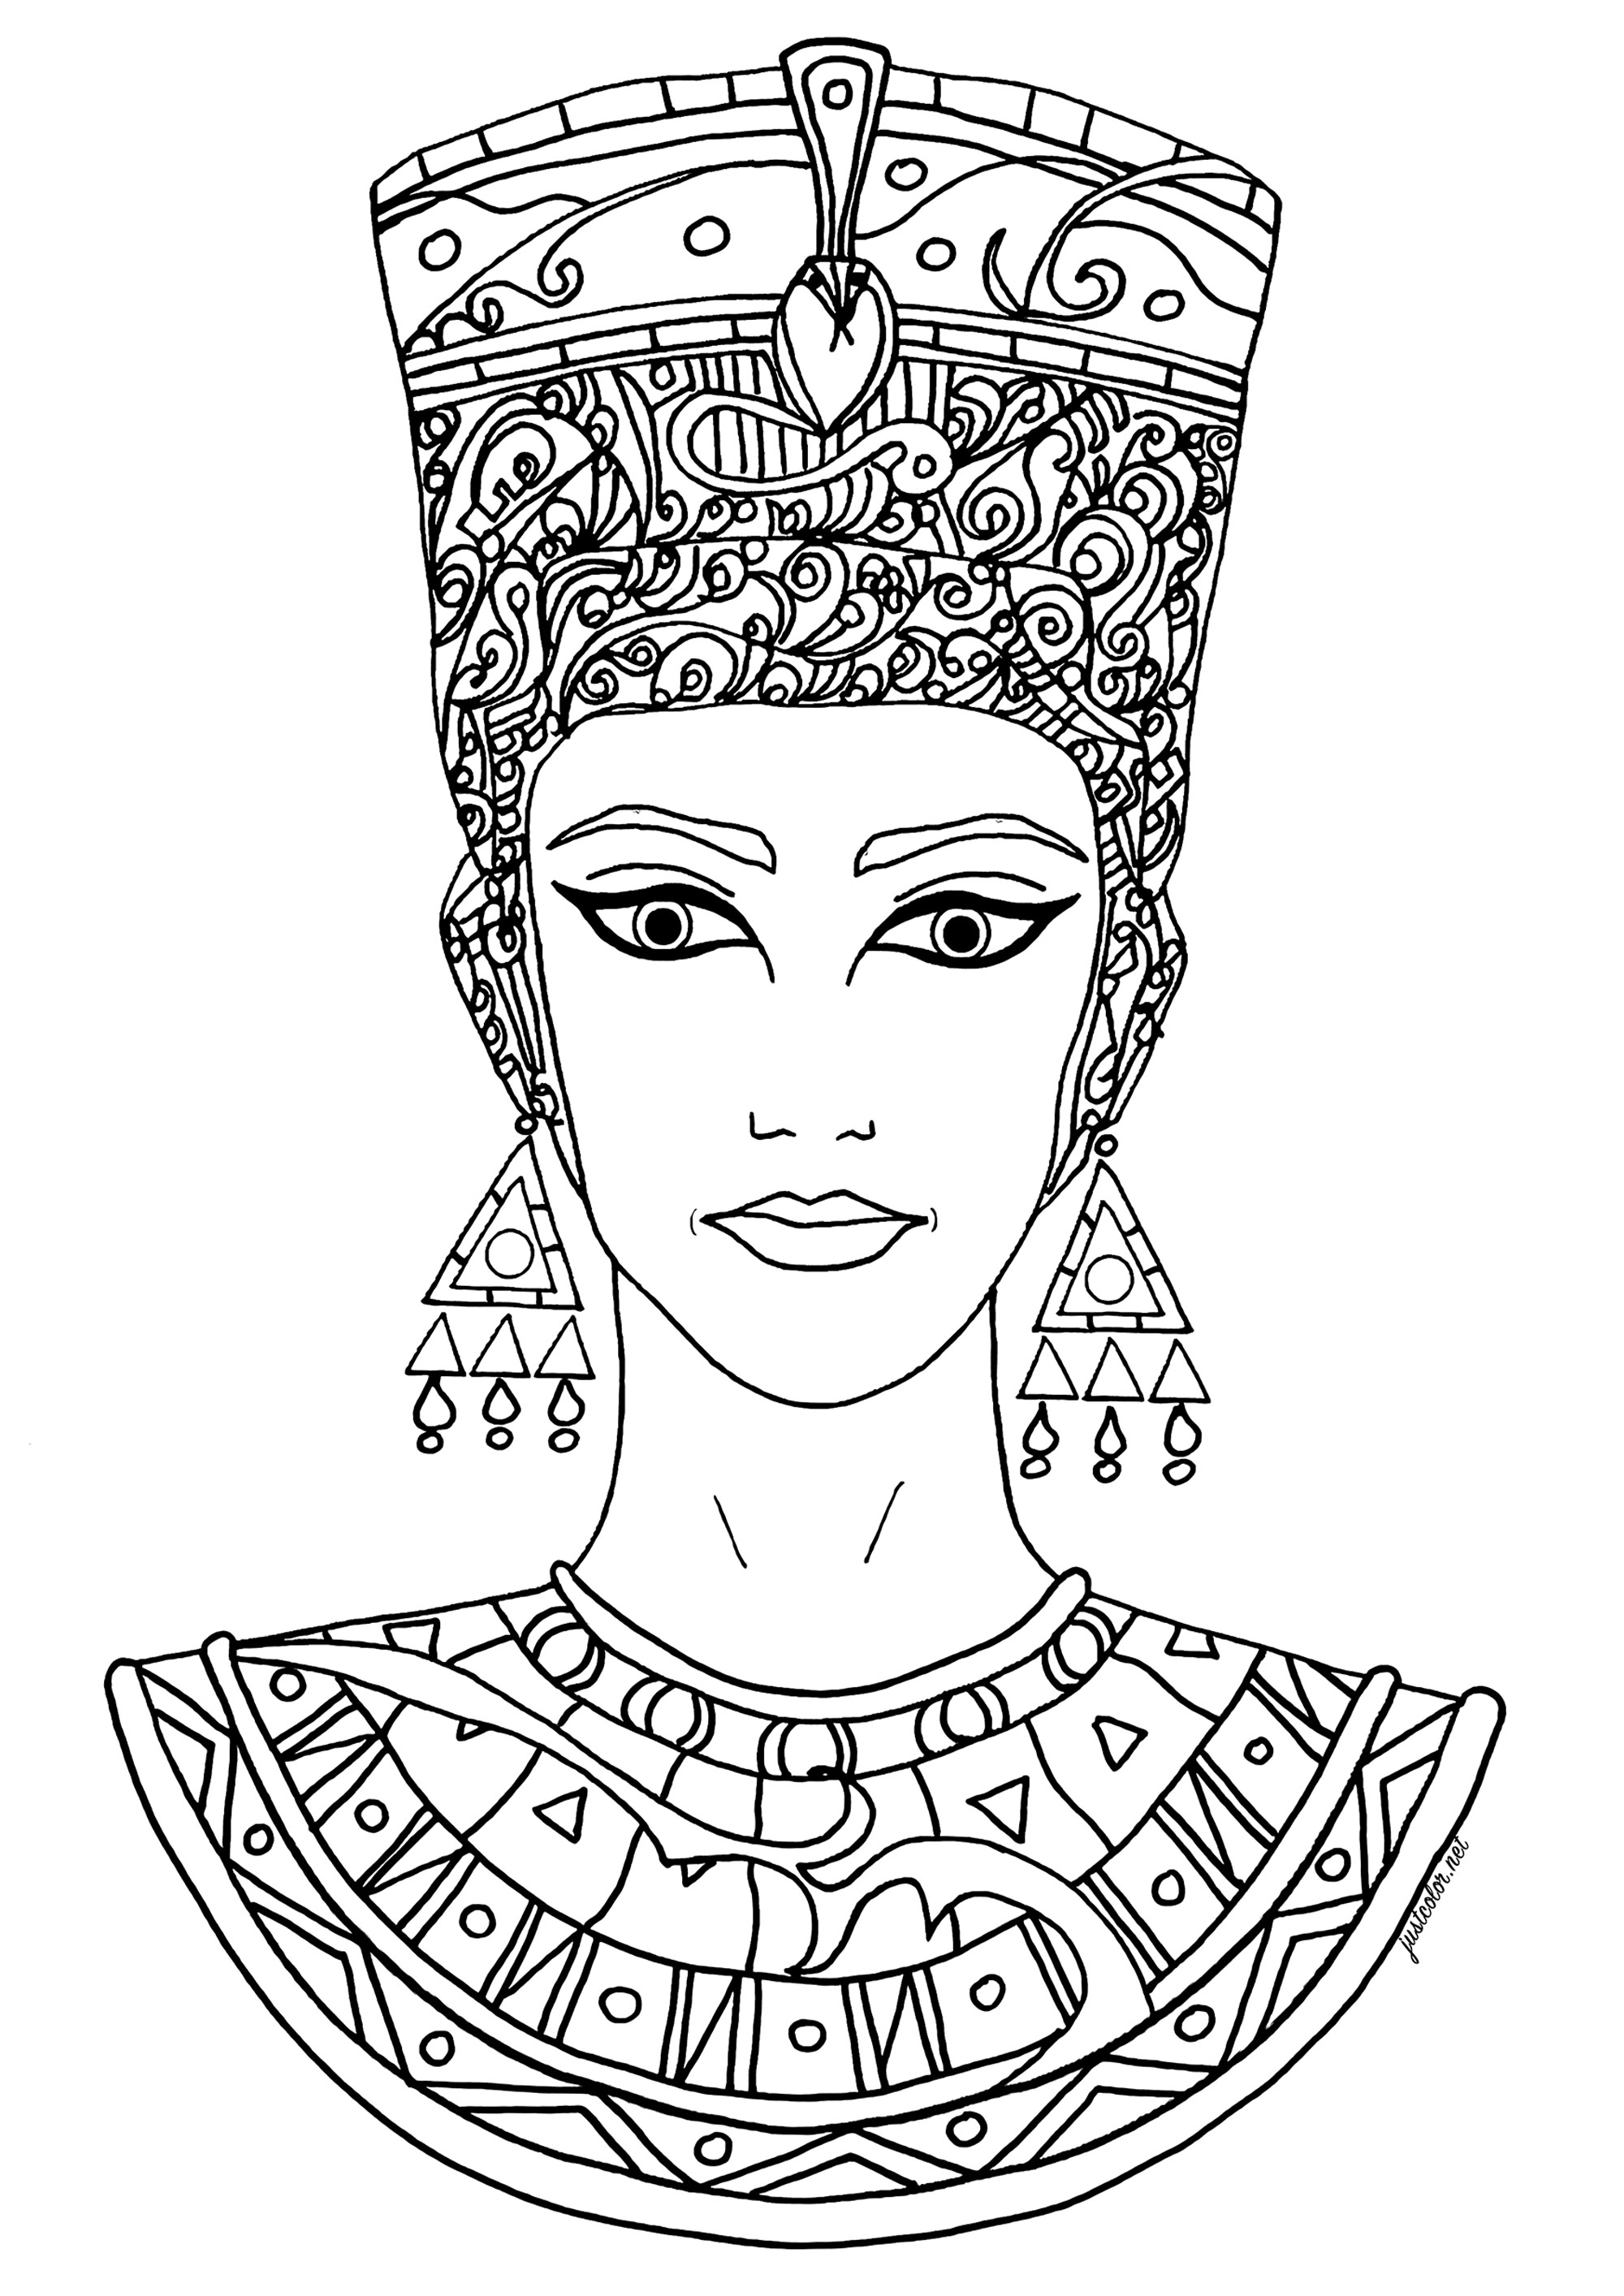 Grazioso disegno liberamente ispirato a Nefertiti. Nefertiti era un'antica regina egizia, moglie del faraone Akhenaton che regnò intorno al 1353-1336 a.C. È nota soprattutto per il suo ruolo nella rivoluzione religiosa di Akhenaton, che vide il culto di Aten, il dio del sole, diventare la religione dominante dell'Egitto, e per il suo famoso busto, considerato una delle opere più importanti dell'arte egizia.